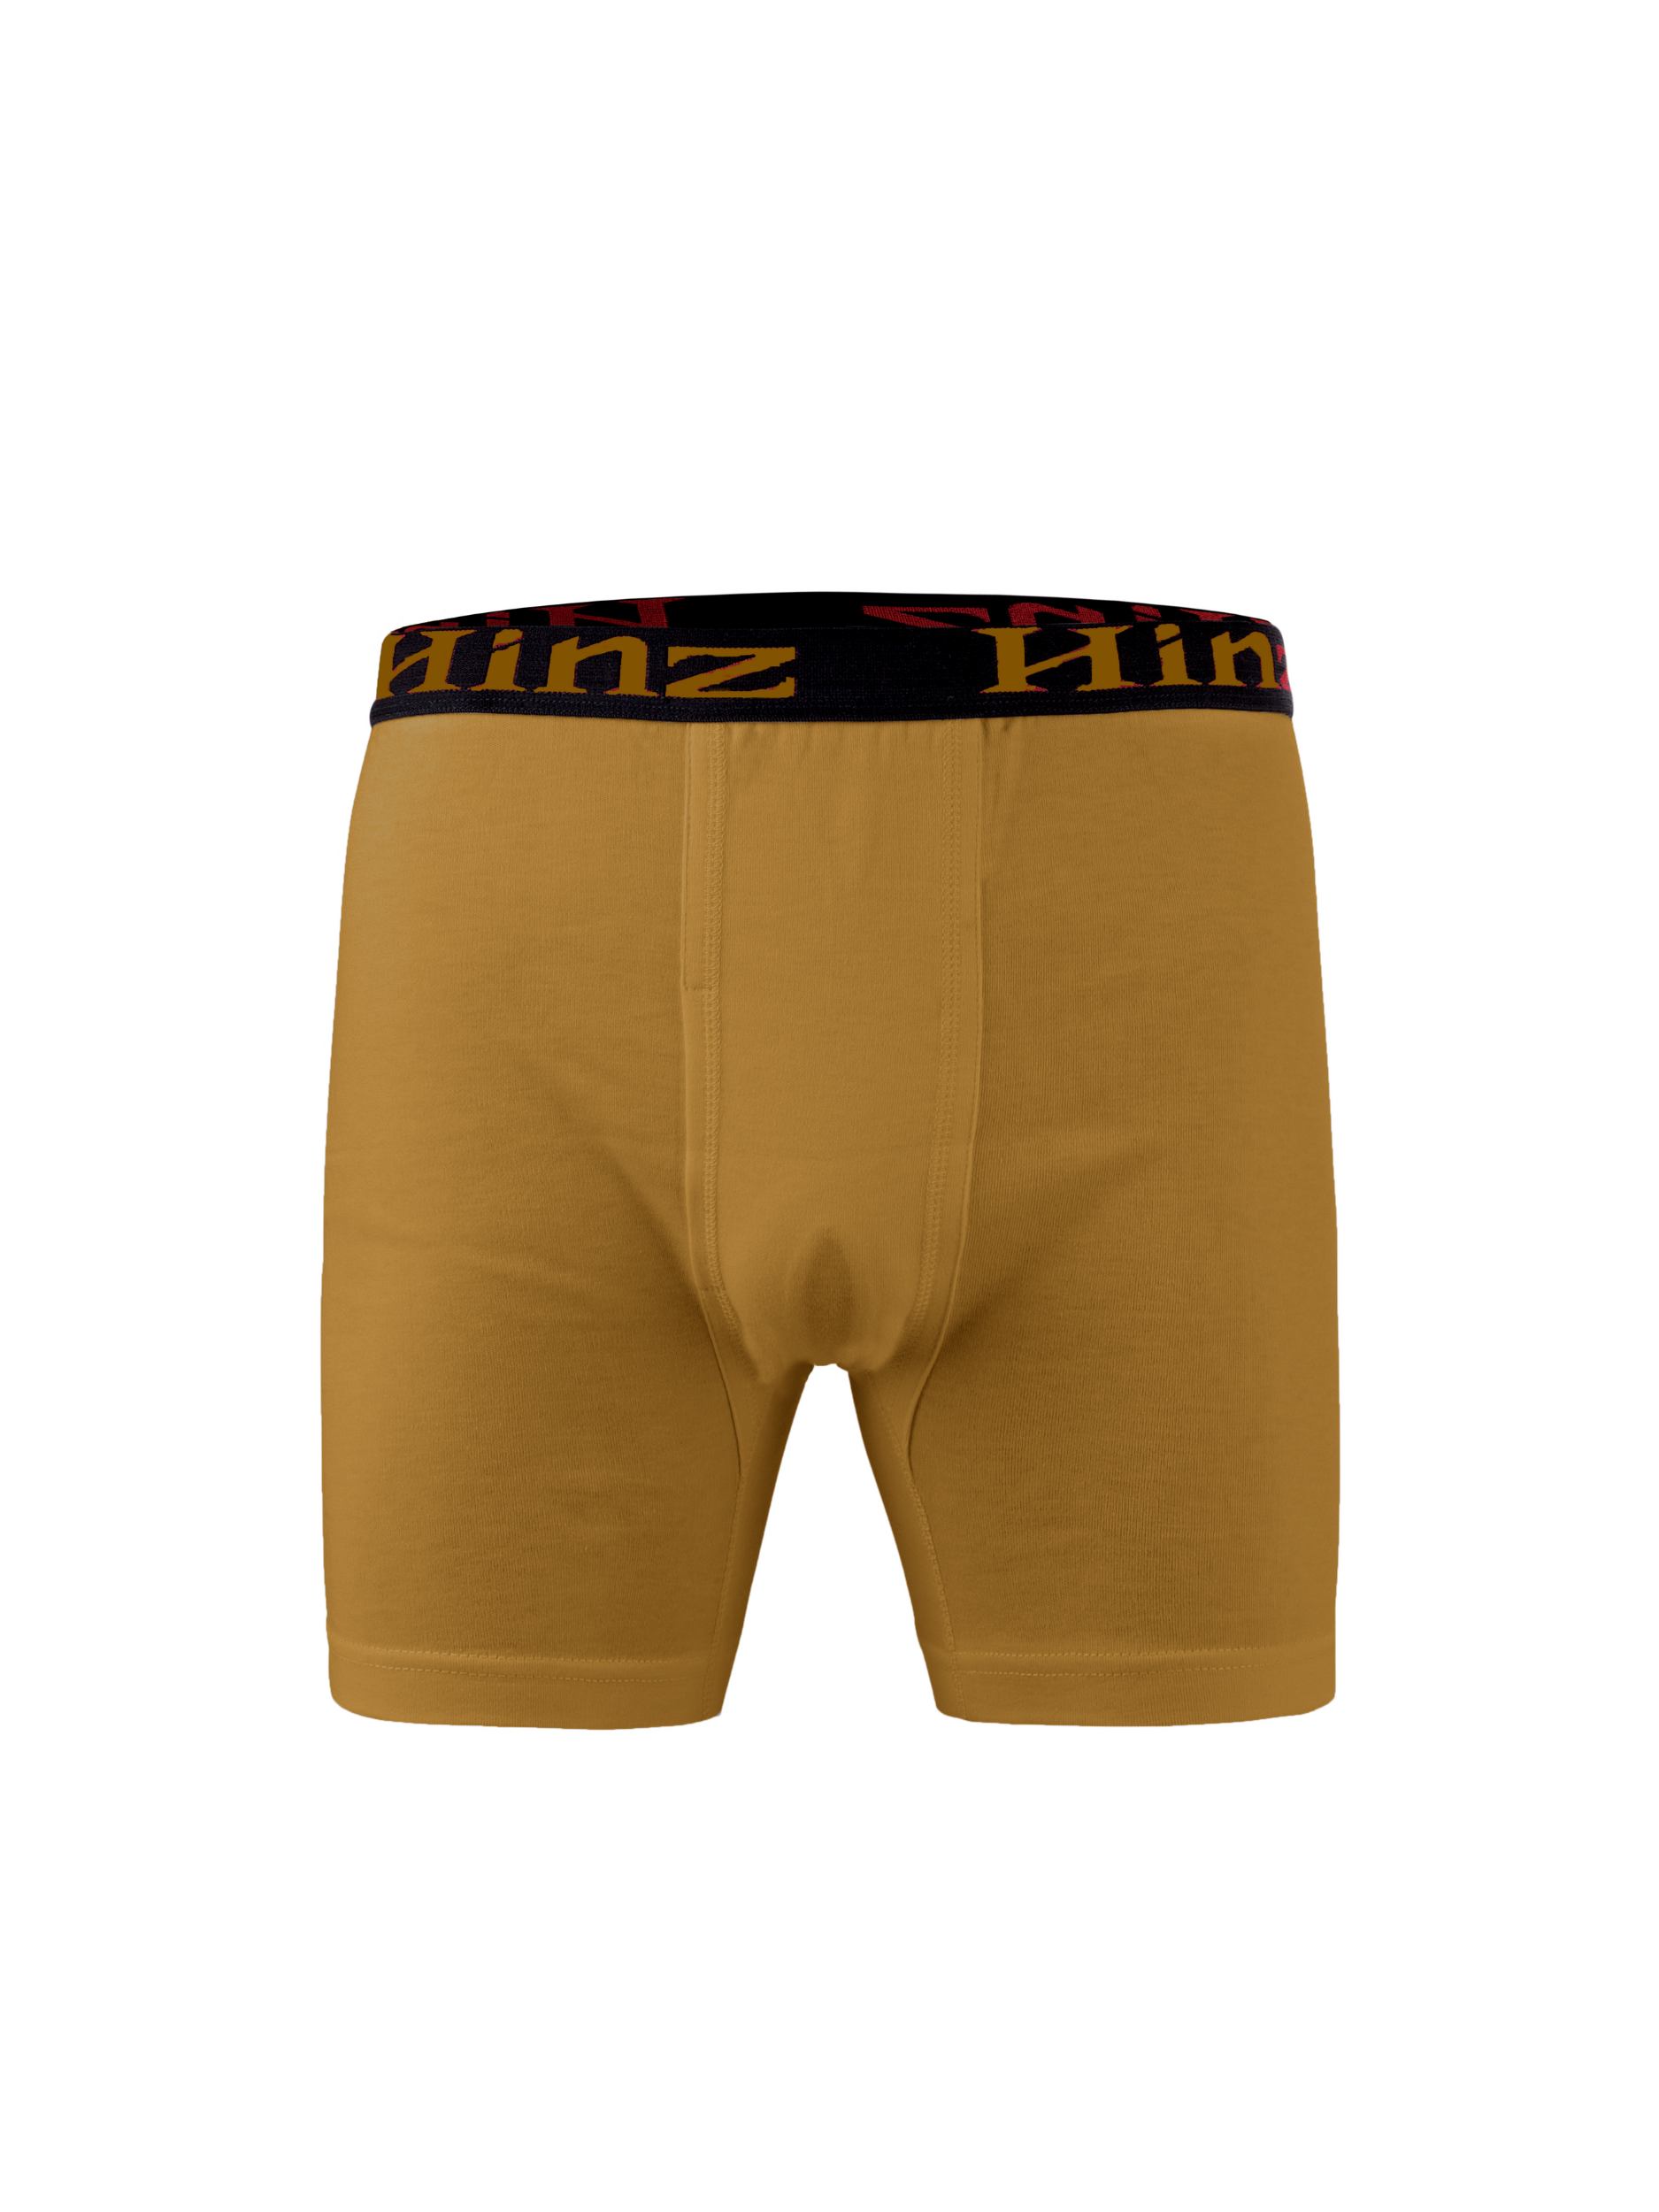 Best Men's Signature Cotton Boxer Shorts (Multi-Colors) 502 – Hinz Knit